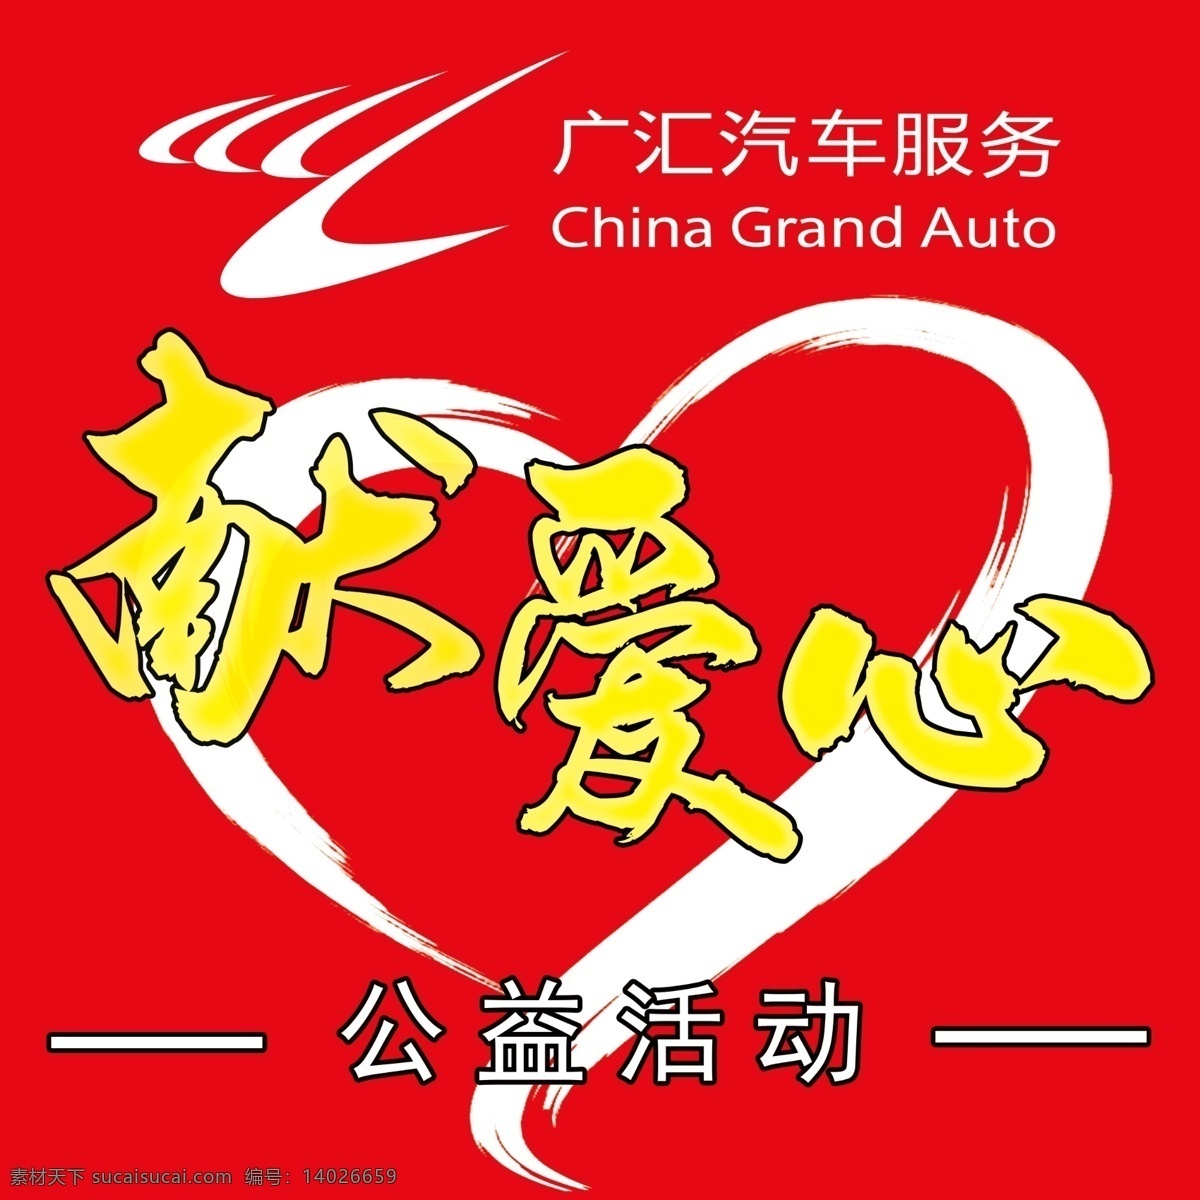 献爱心 公益活动 广汇logo 手绘爱心 红色